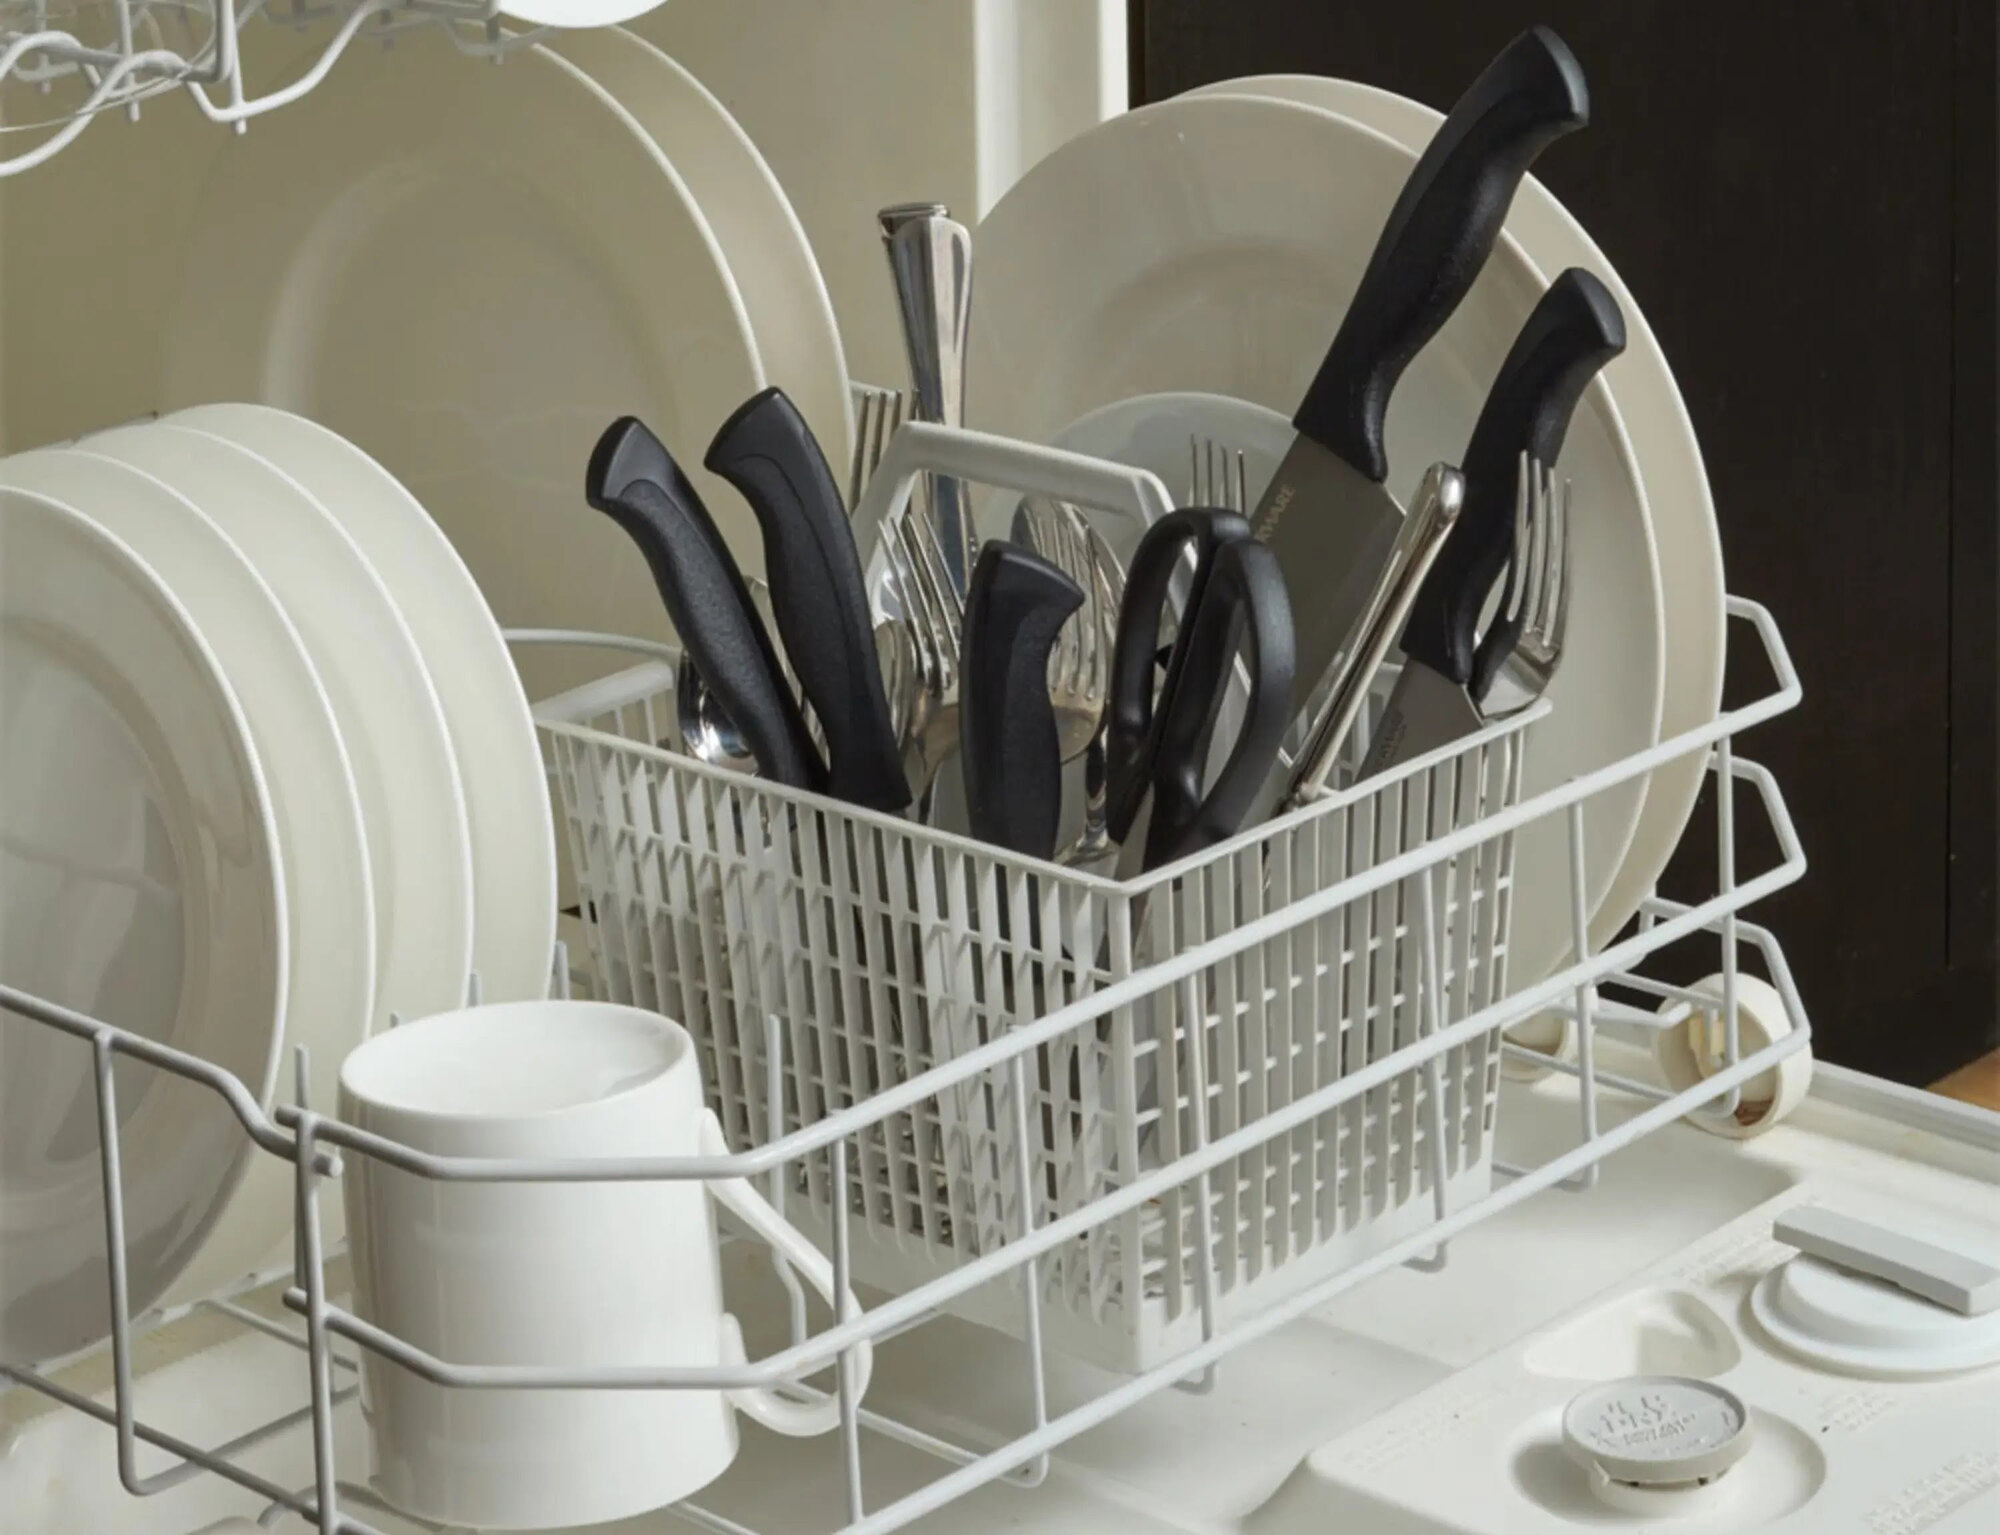 3 Best Dishwasher Safe Knife set of 2023 - IMARKU